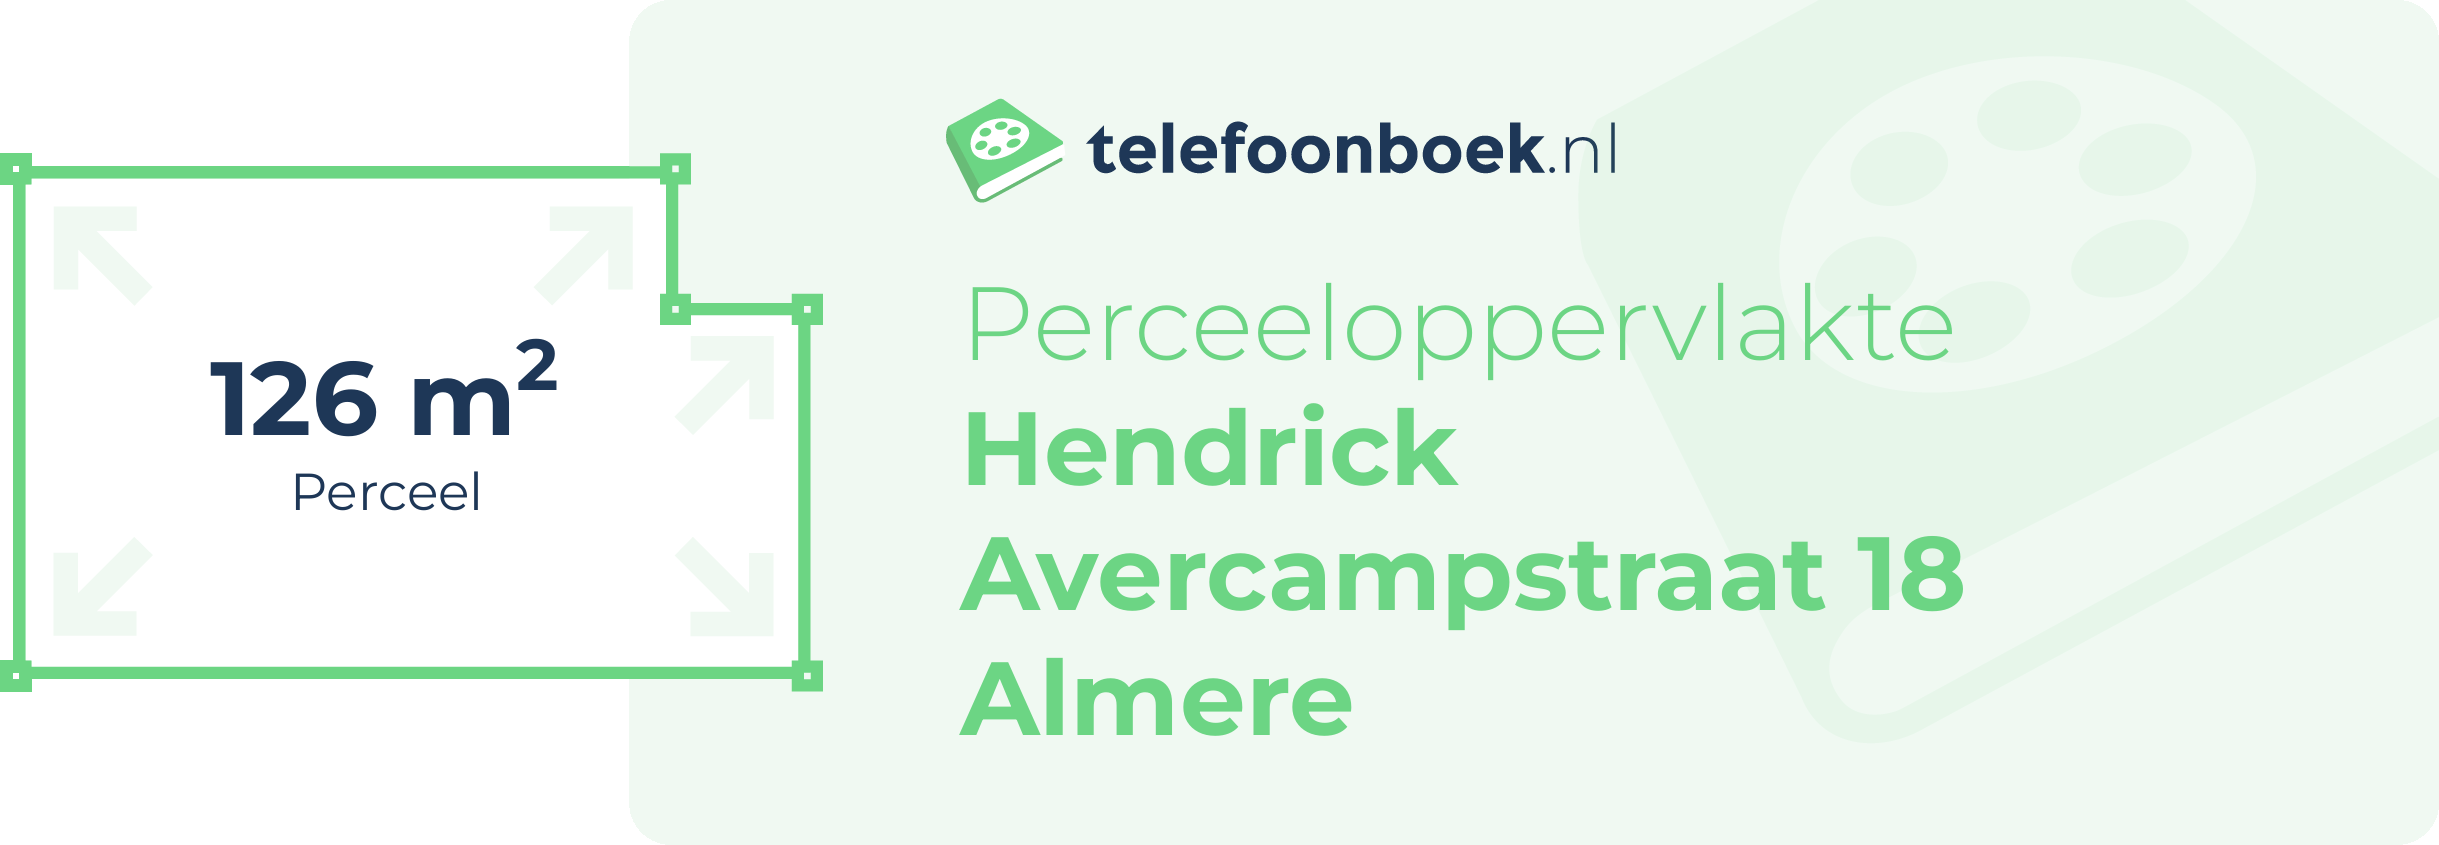 Perceeloppervlakte Hendrick Avercampstraat 18 Almere